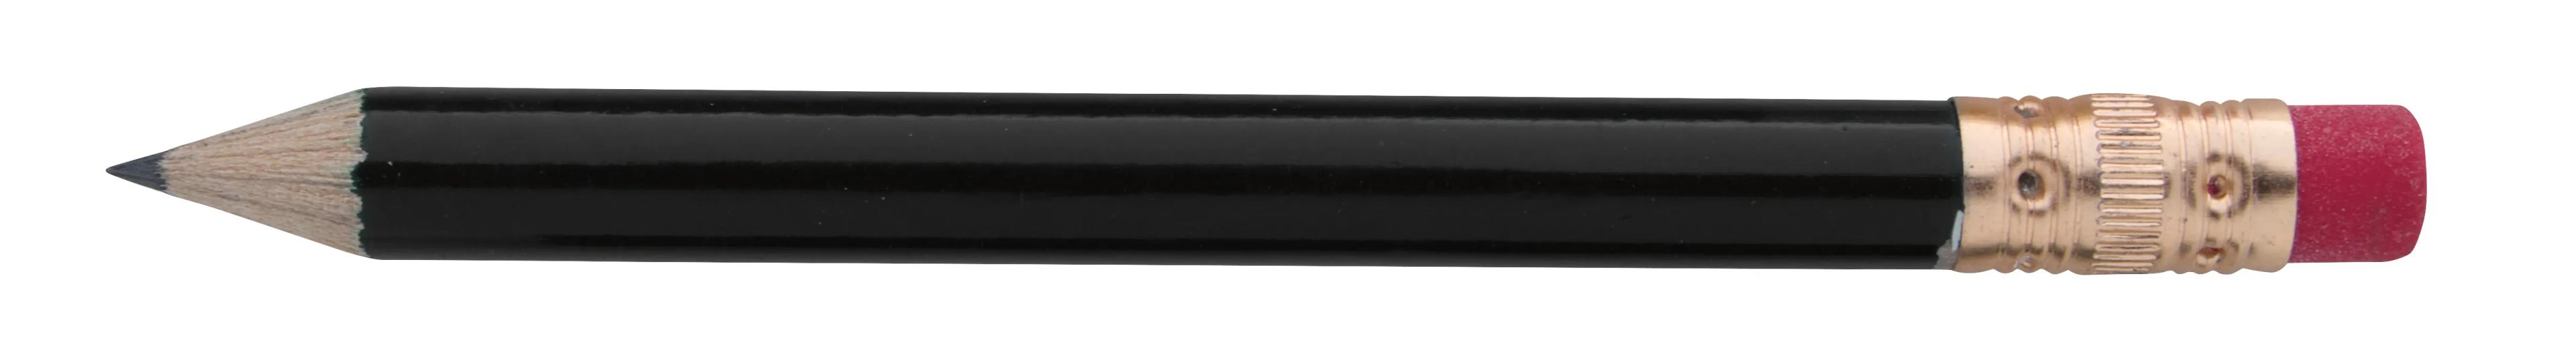 Round Golf Pencil with Eraser 6 of 13